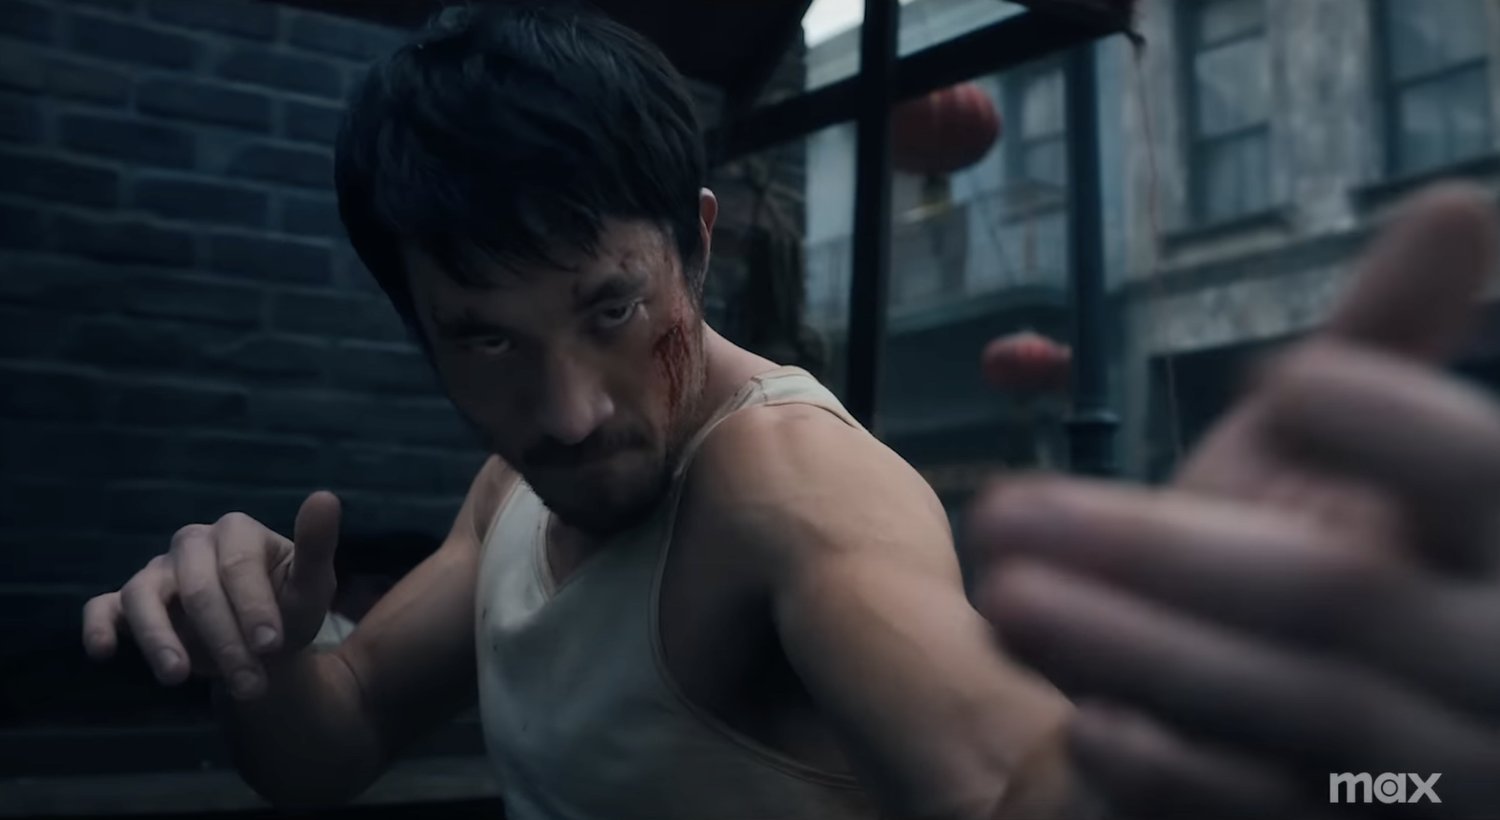 Bande-annonce Kickass pour la série d’arts martiaux inspirée de Bruce Lee WARRIOR Saison 3